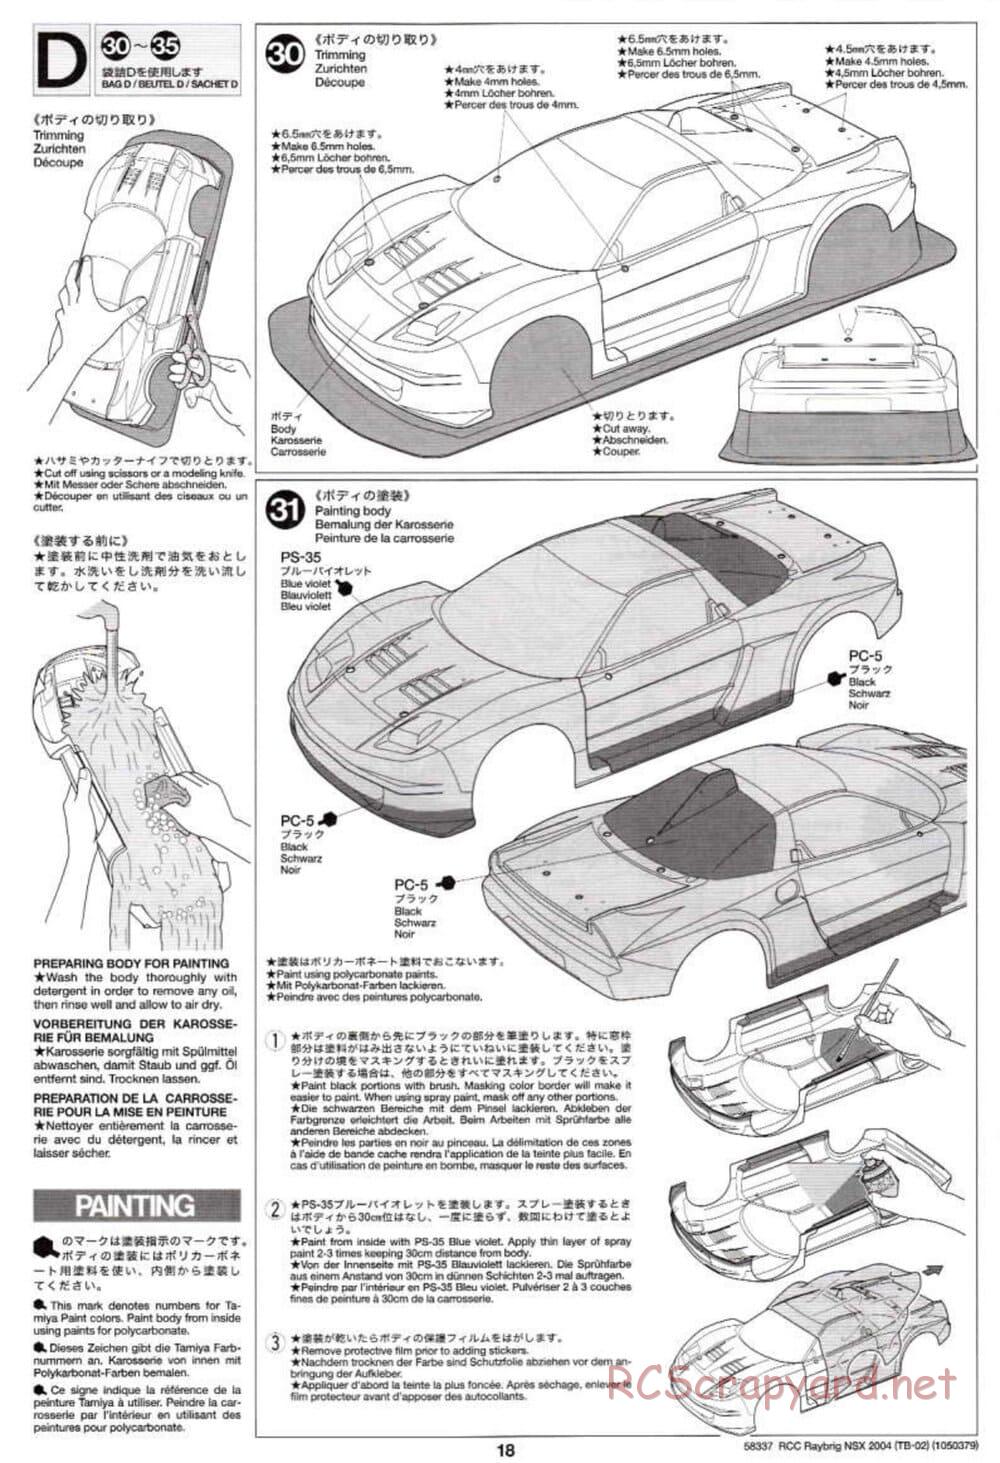 Tamiya - Raybrig NSX 2004 - TB-02 Chassis - Manual - Page 18